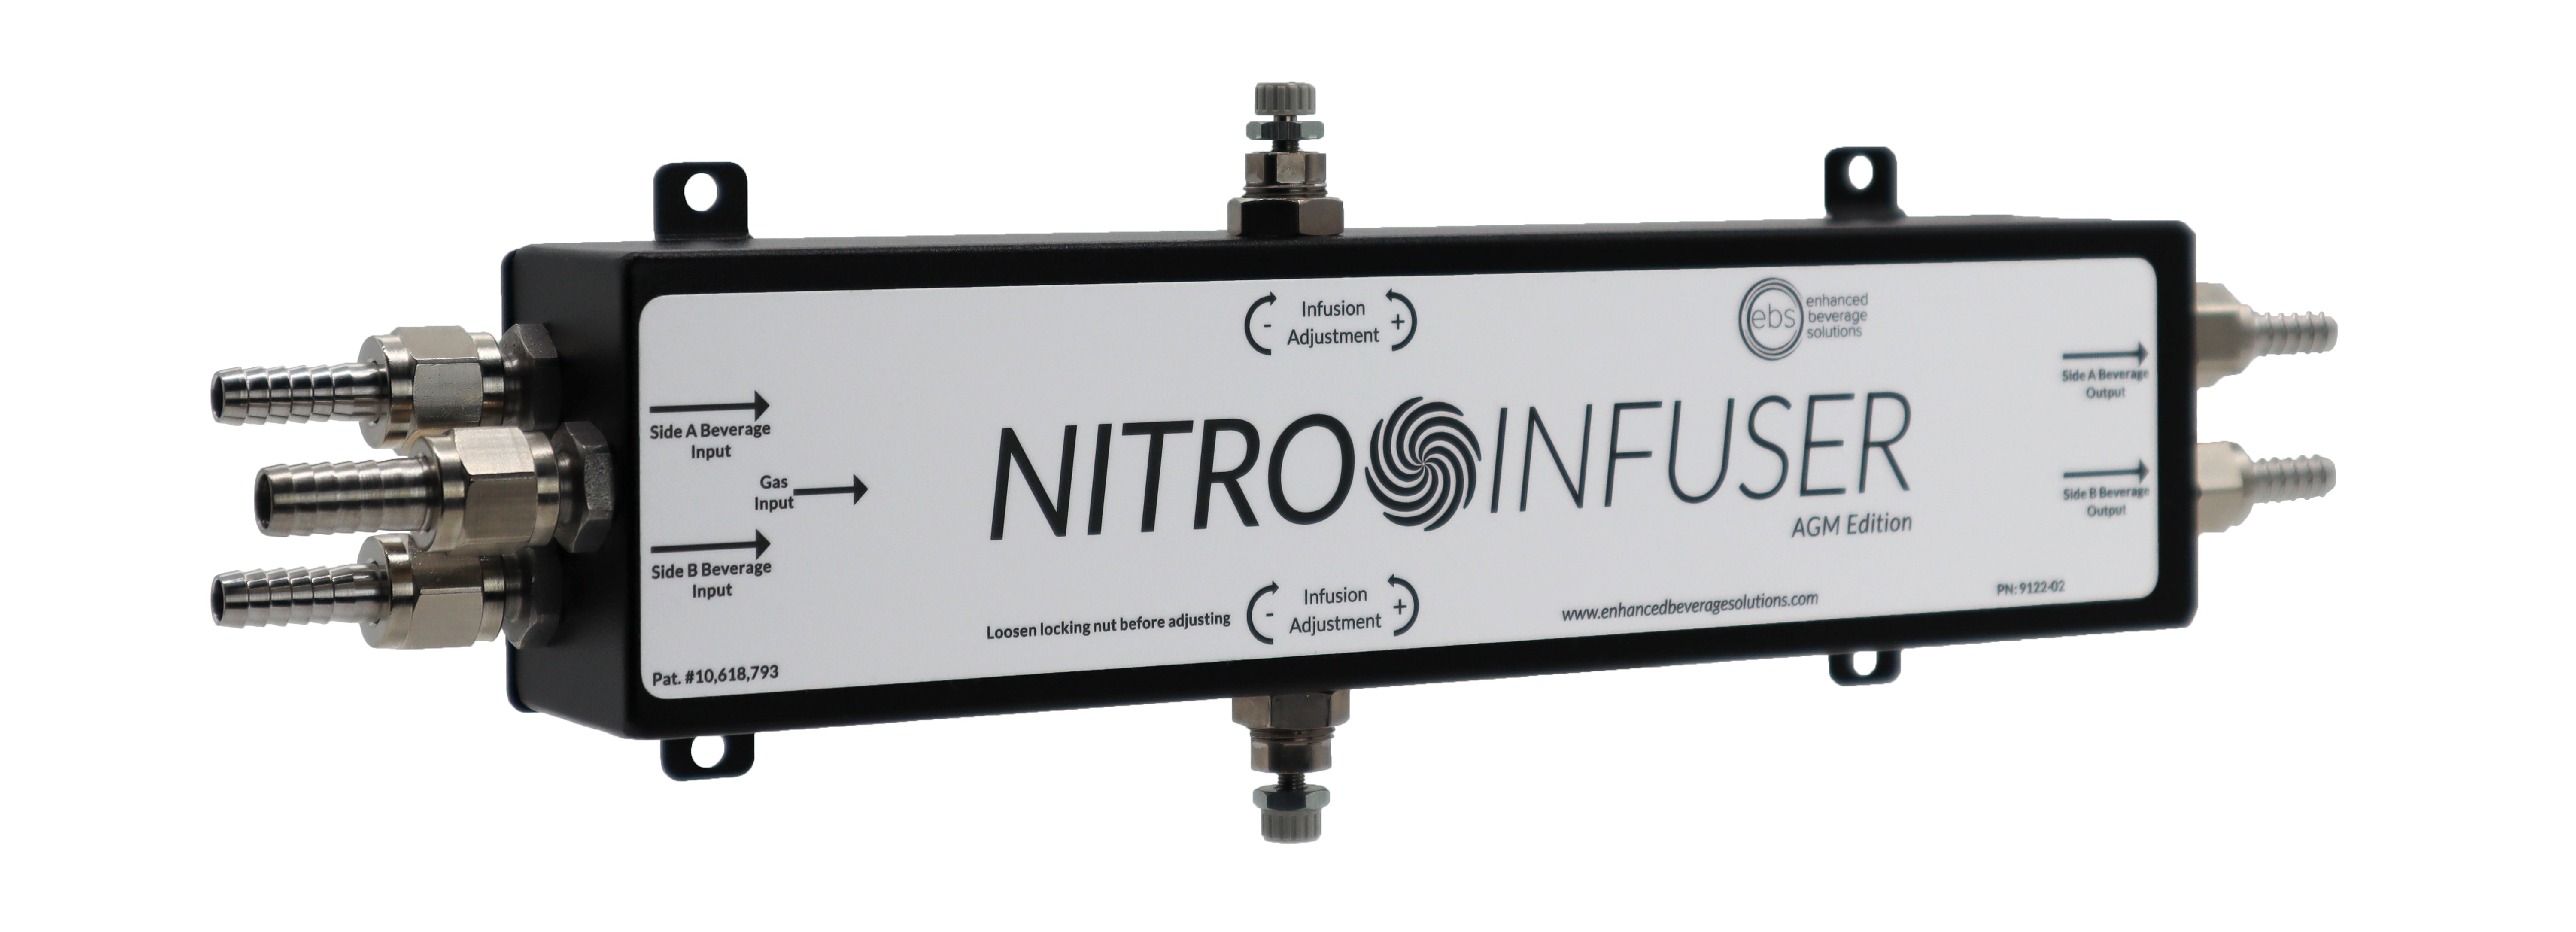 nitro now infuser